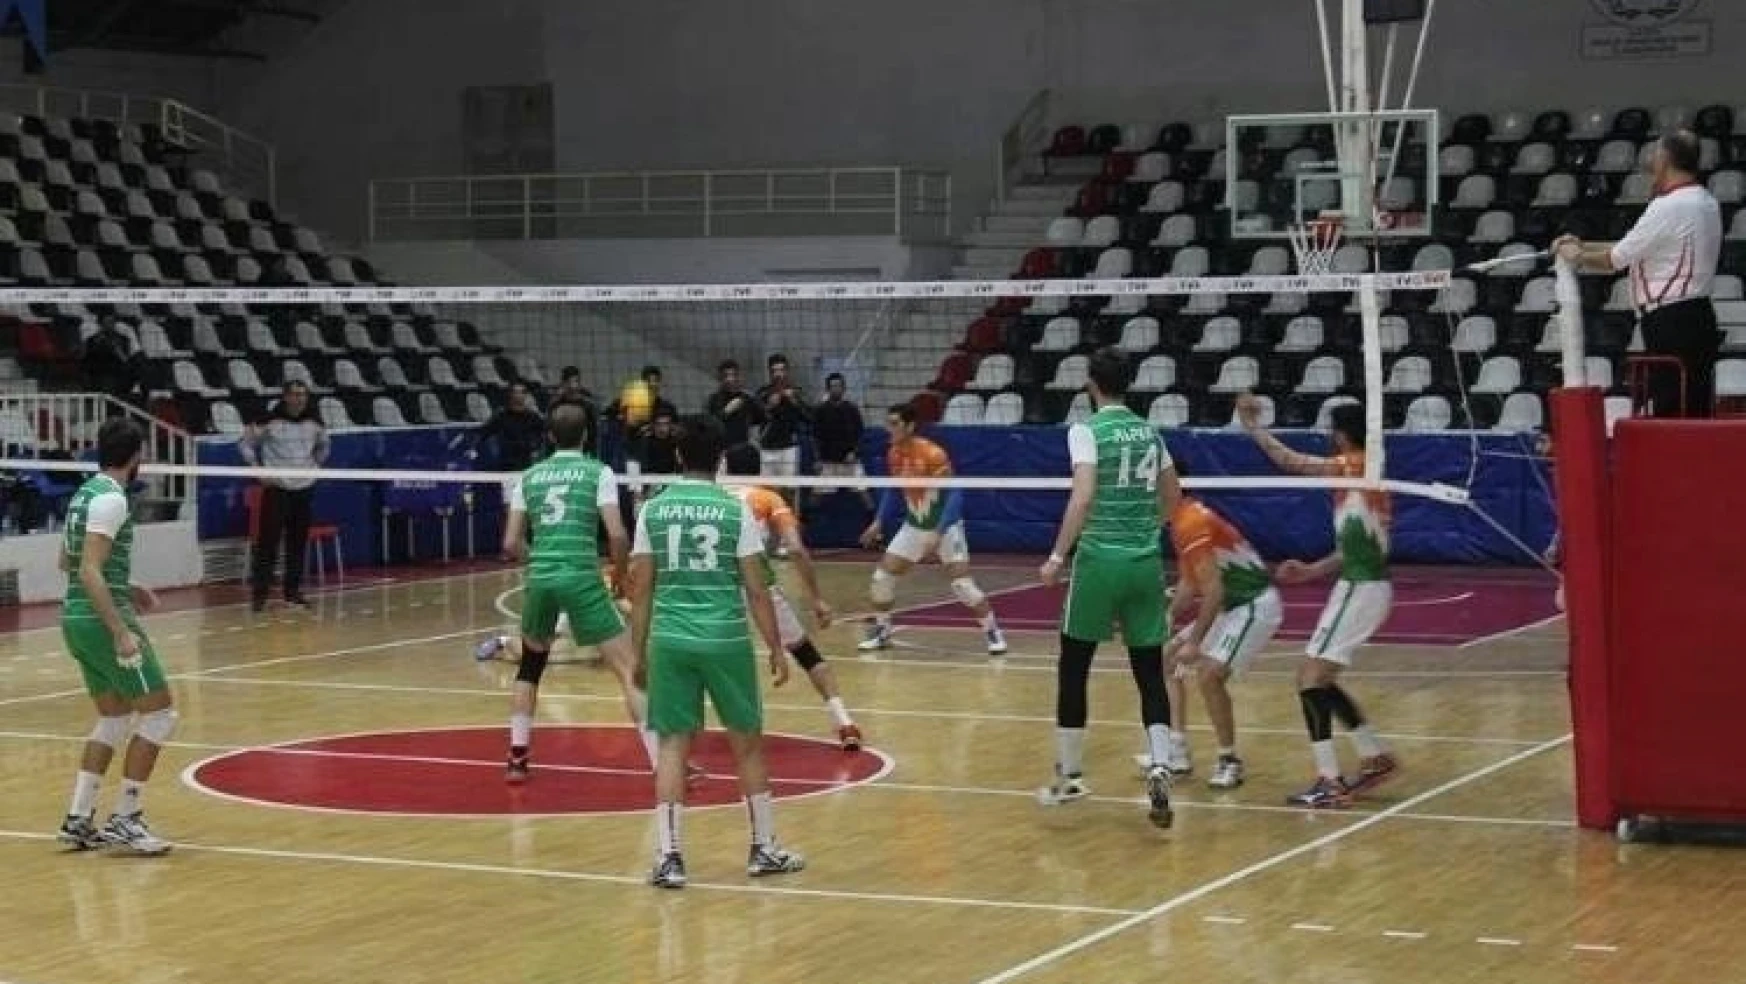 Büyükşehir Belediyespor Voleybol Takımı sahasında 3-0 mağlup oldu
